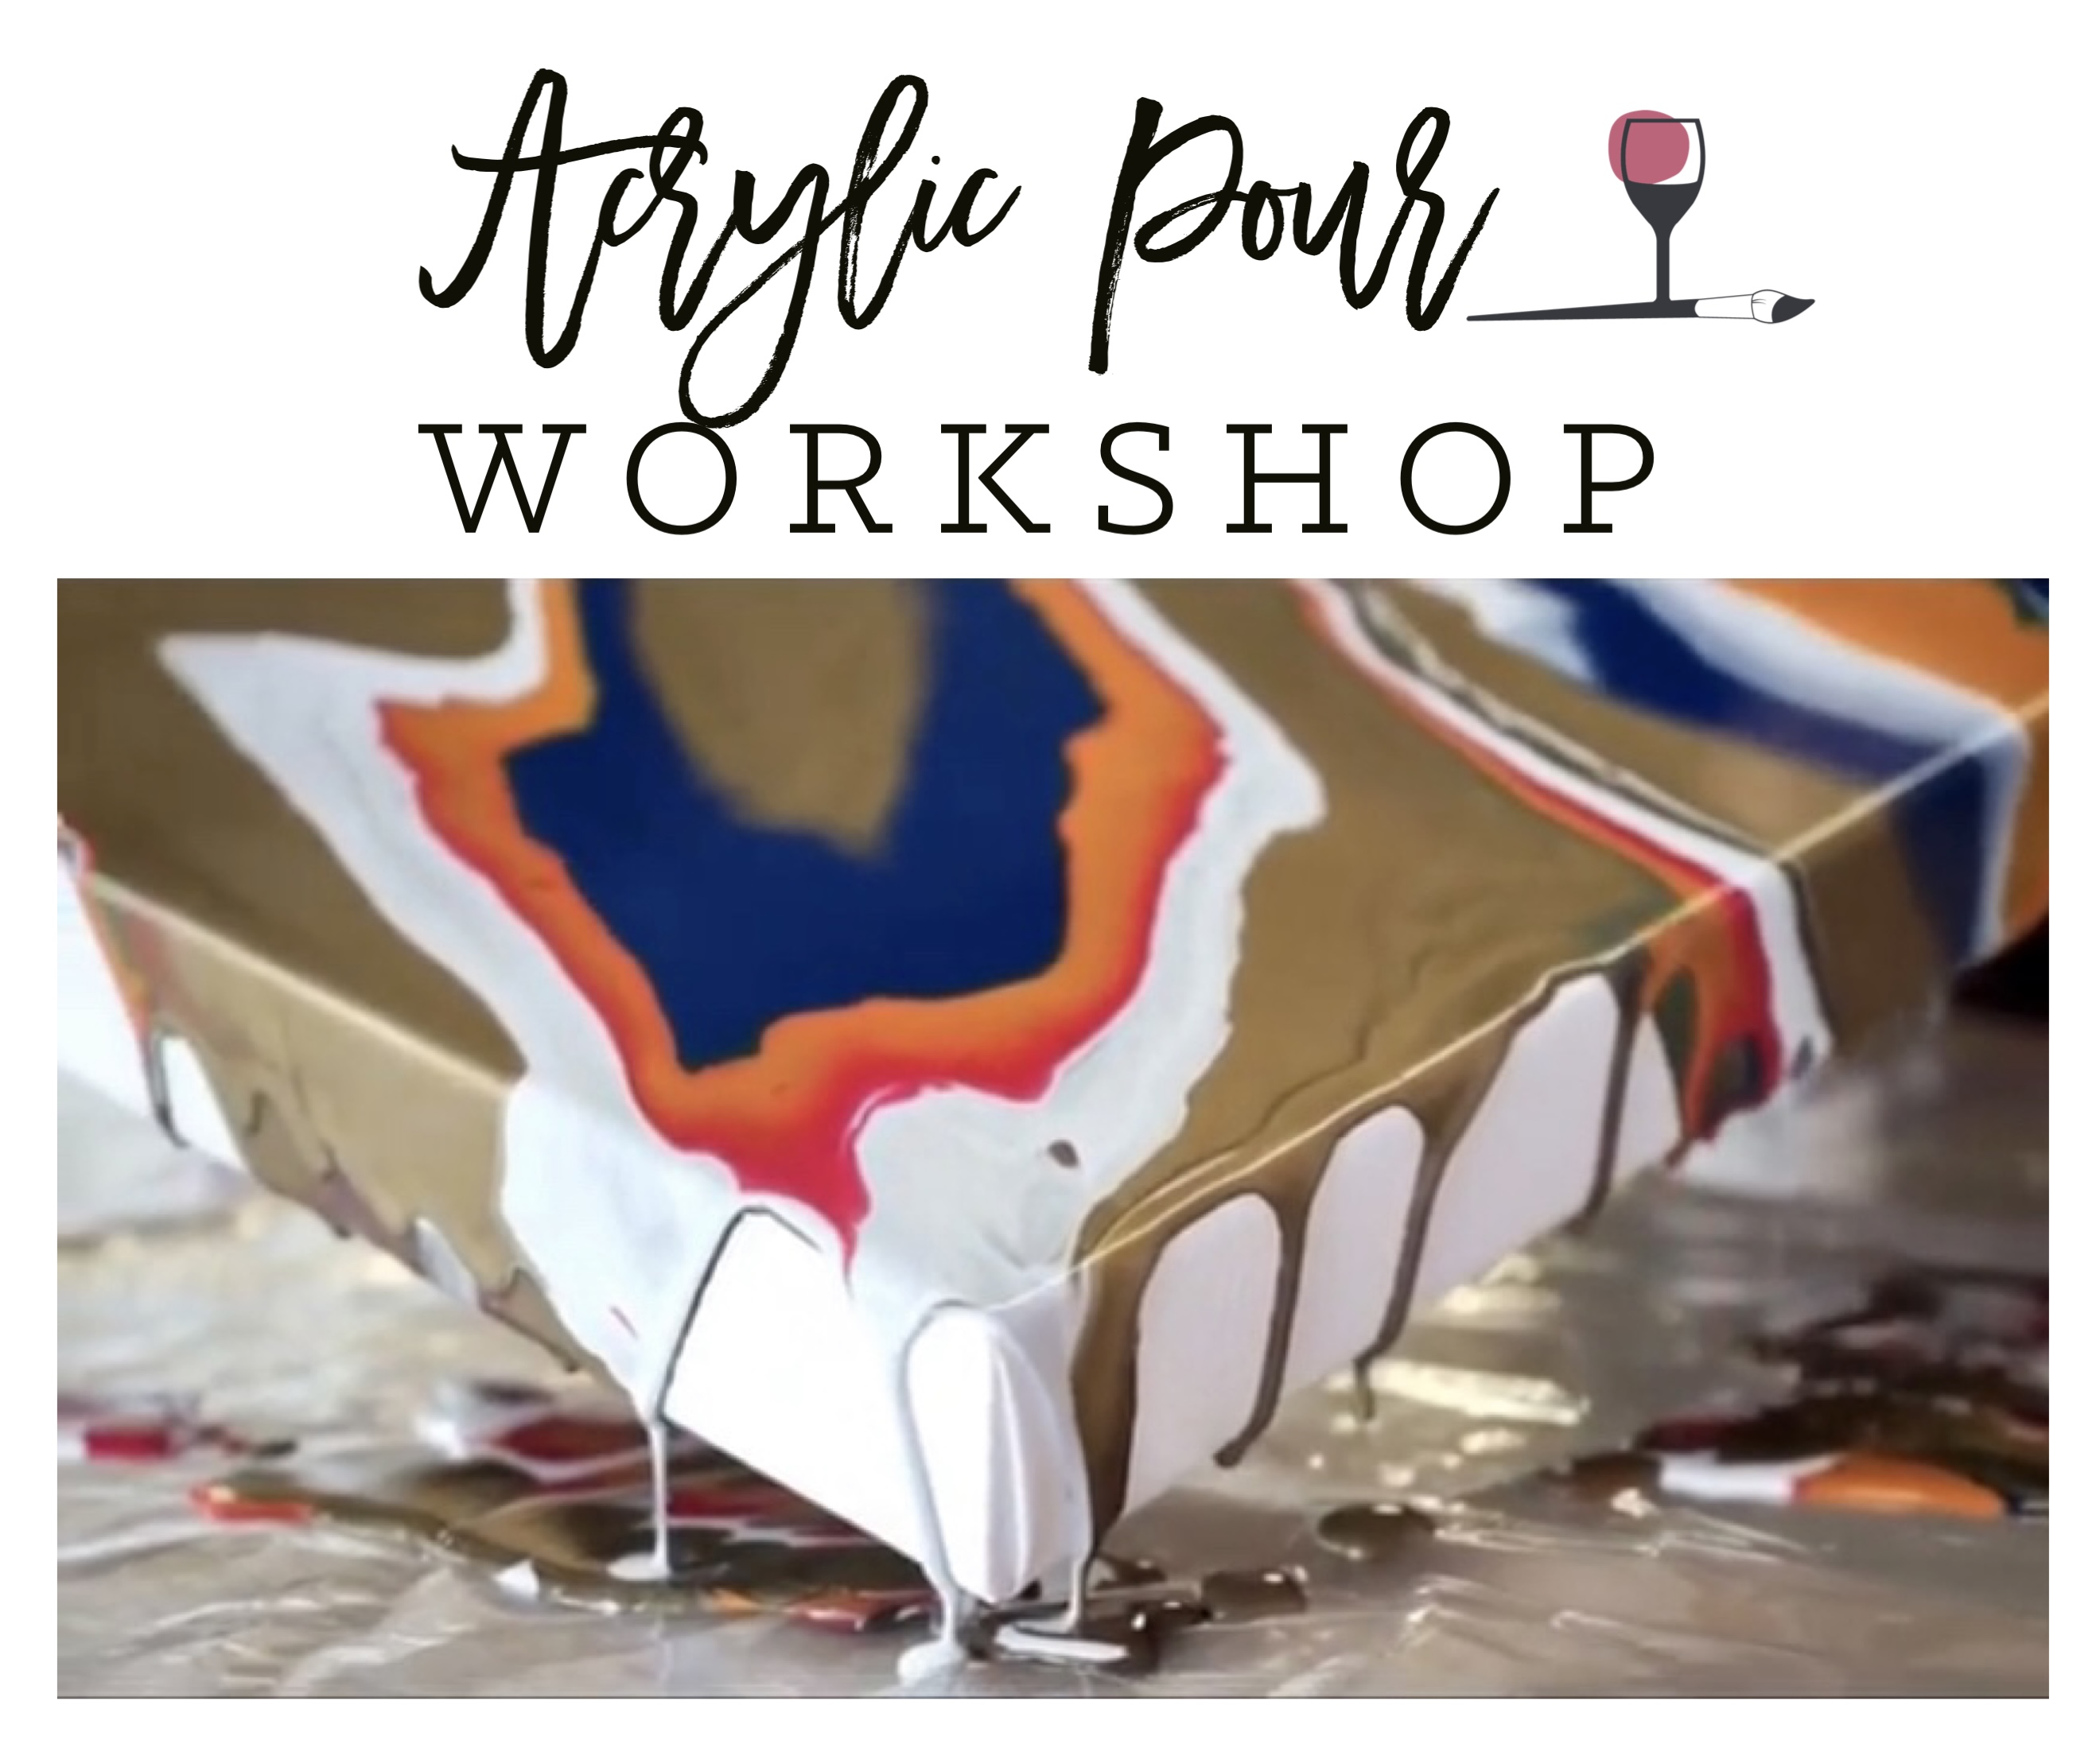 Acrylic Pour Workshop!